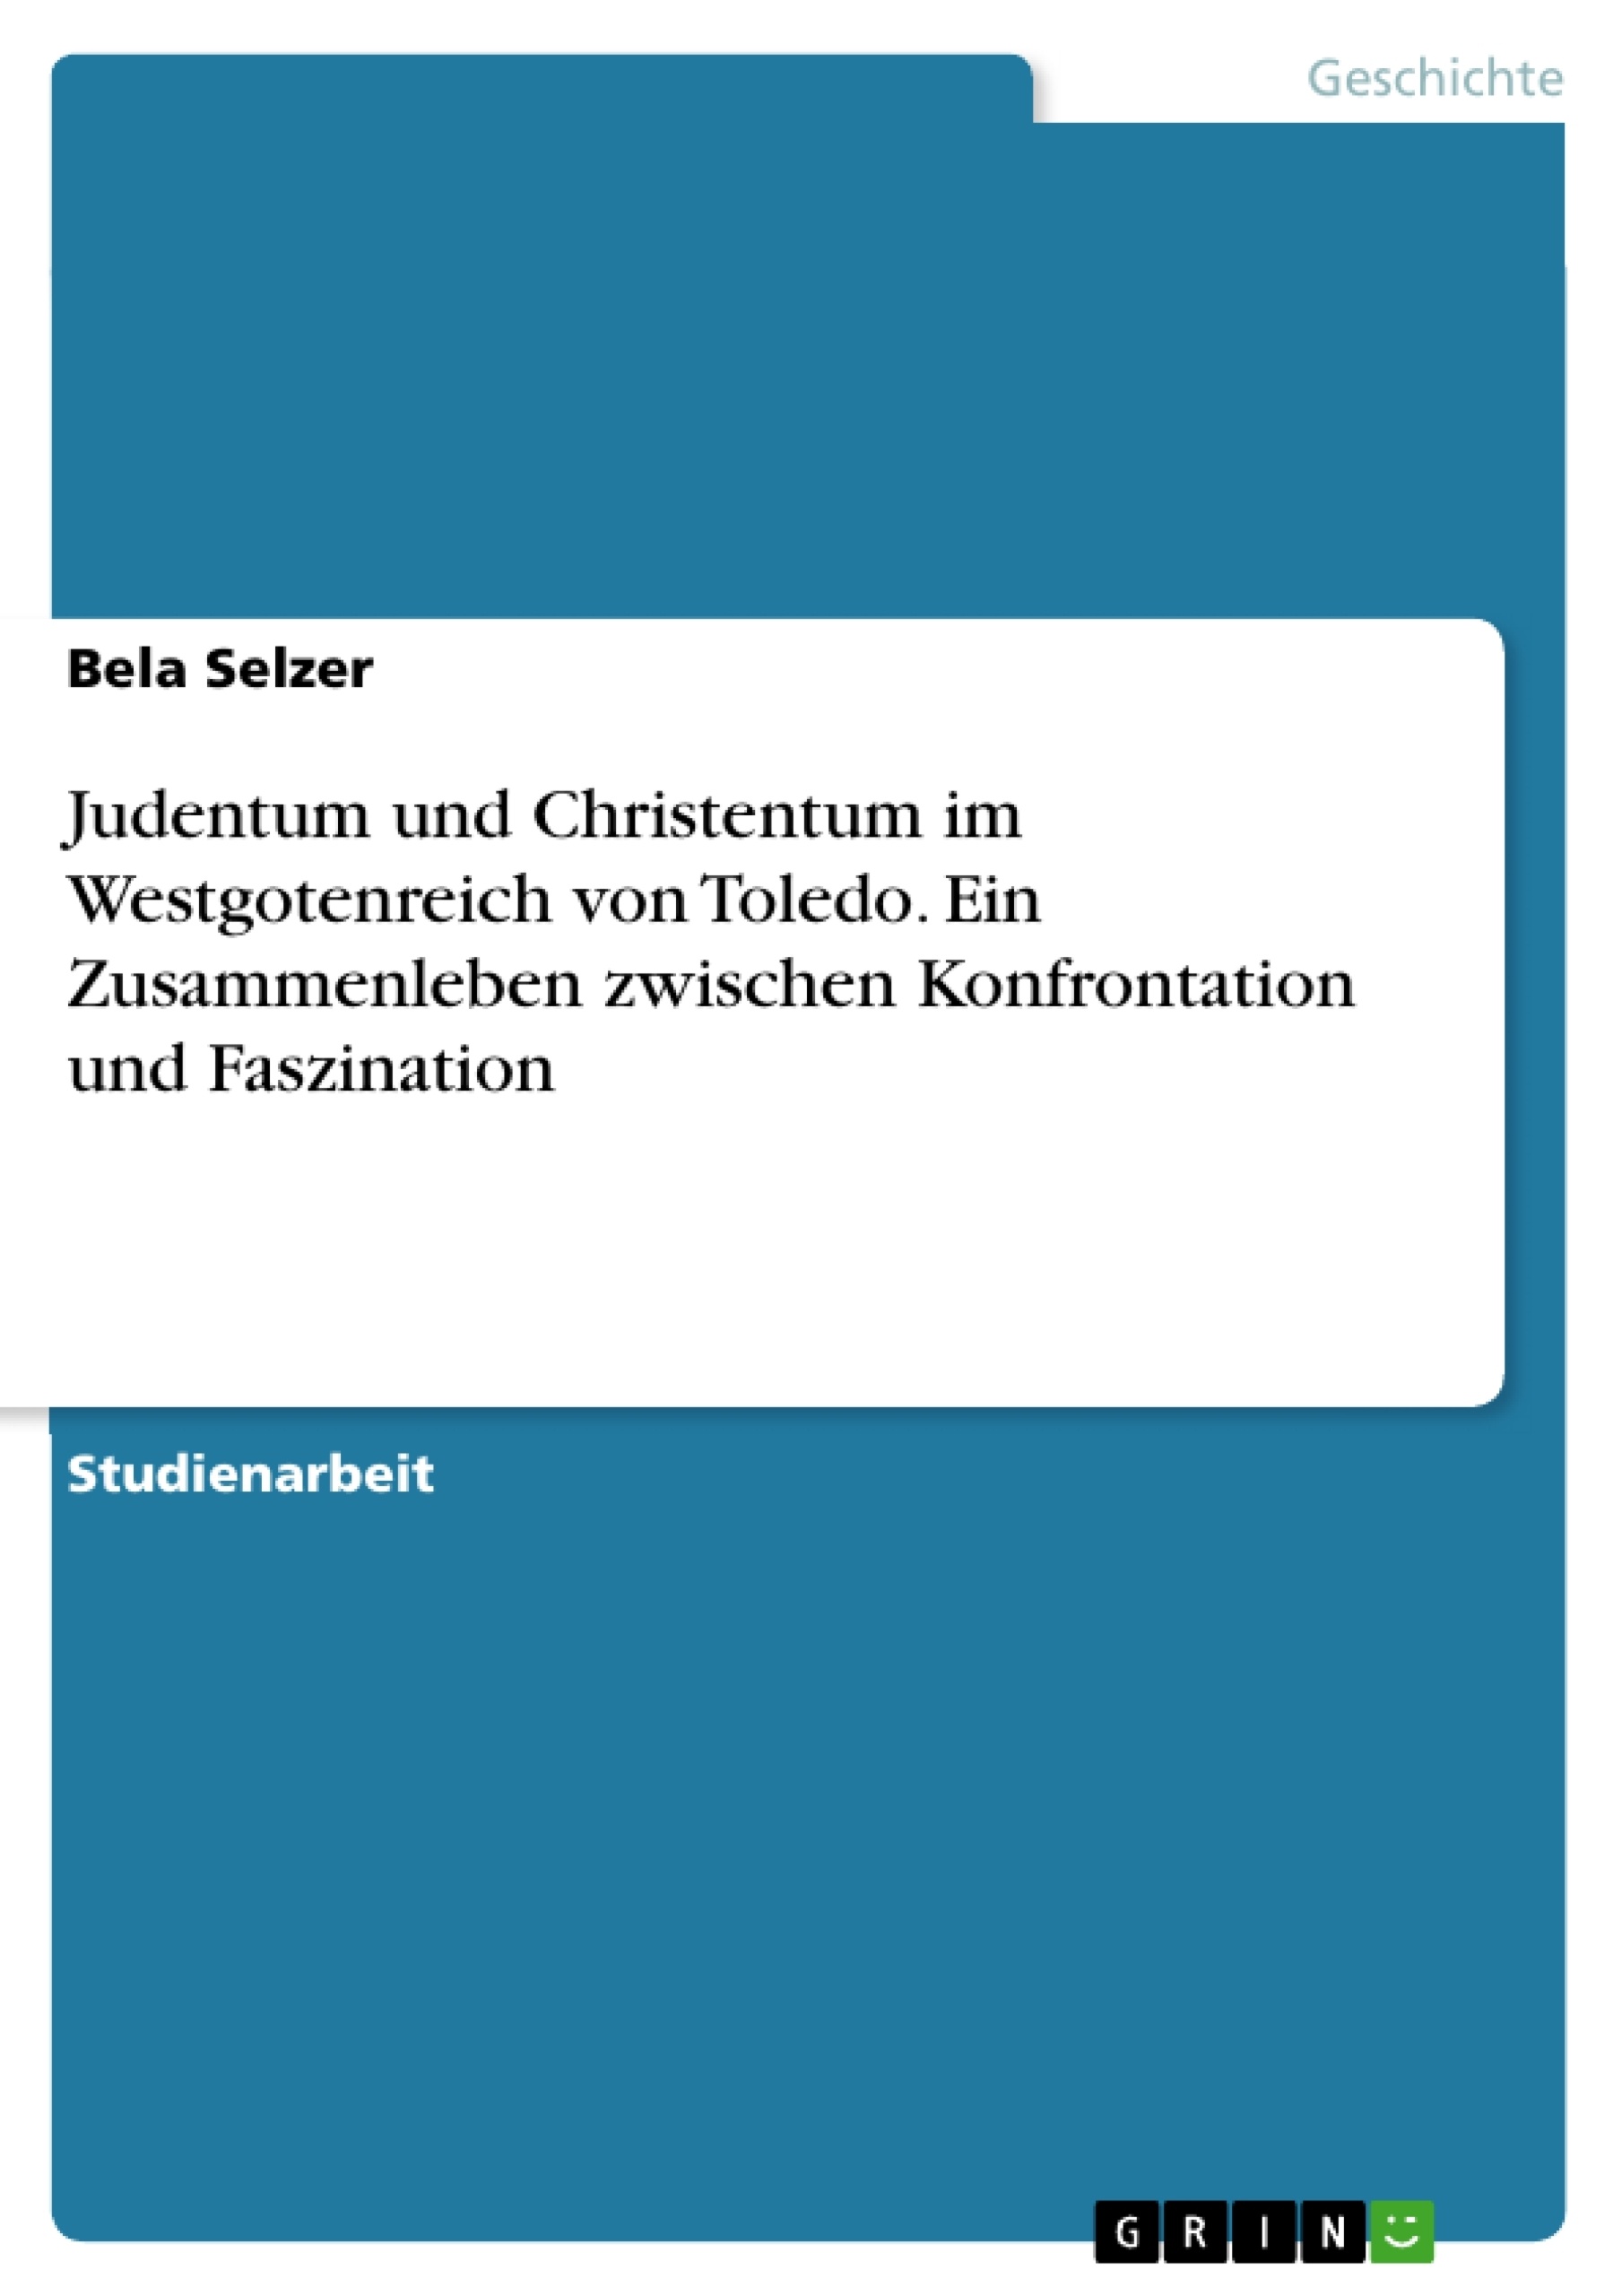 Titel: Judentum und Christentum im Westgotenreich von Toledo. Ein Zusammenleben zwischen Konfrontation und Faszination